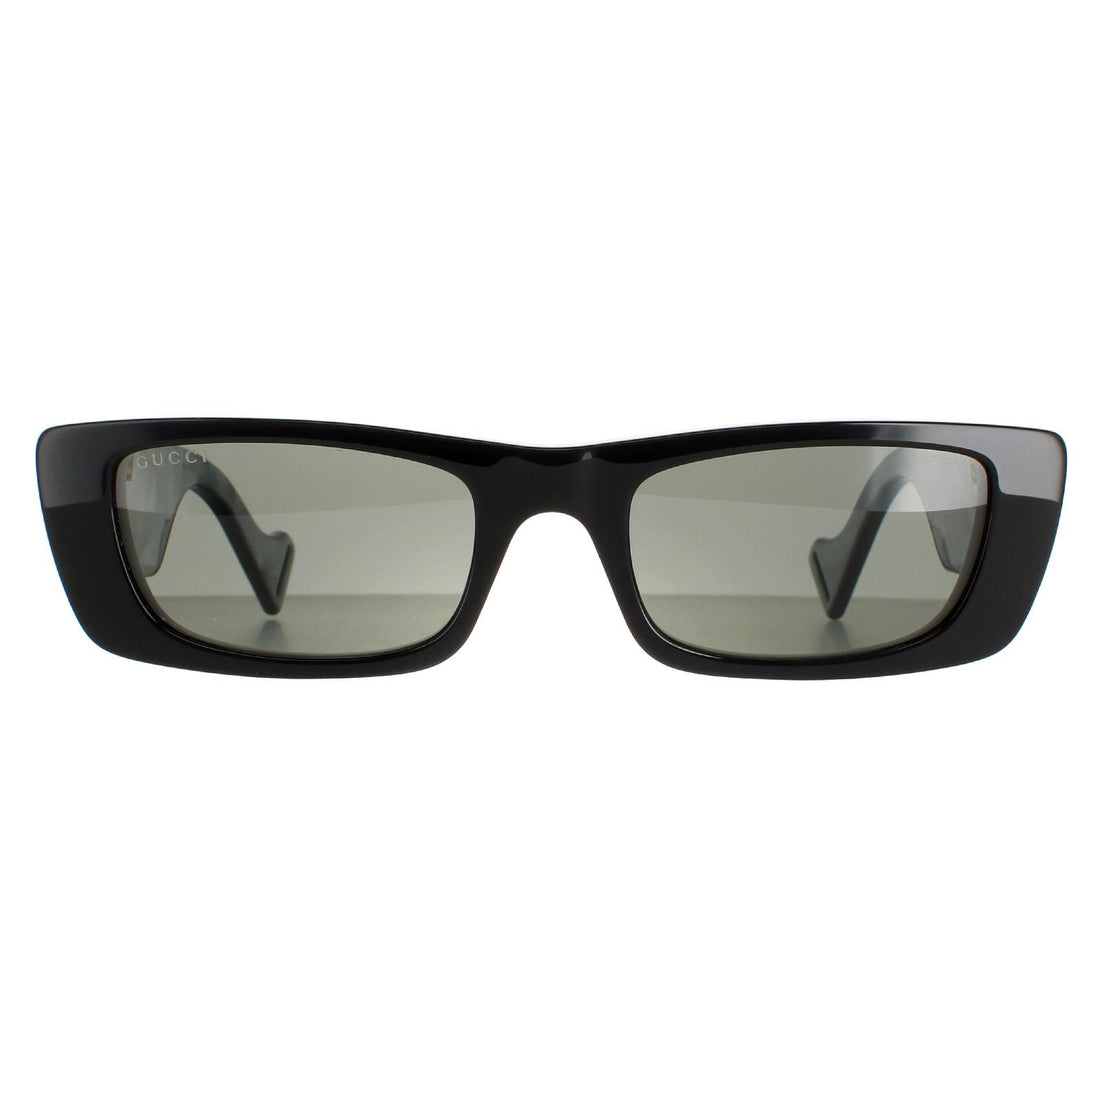 Gucci GG0516S Sunglasses Black / Grey